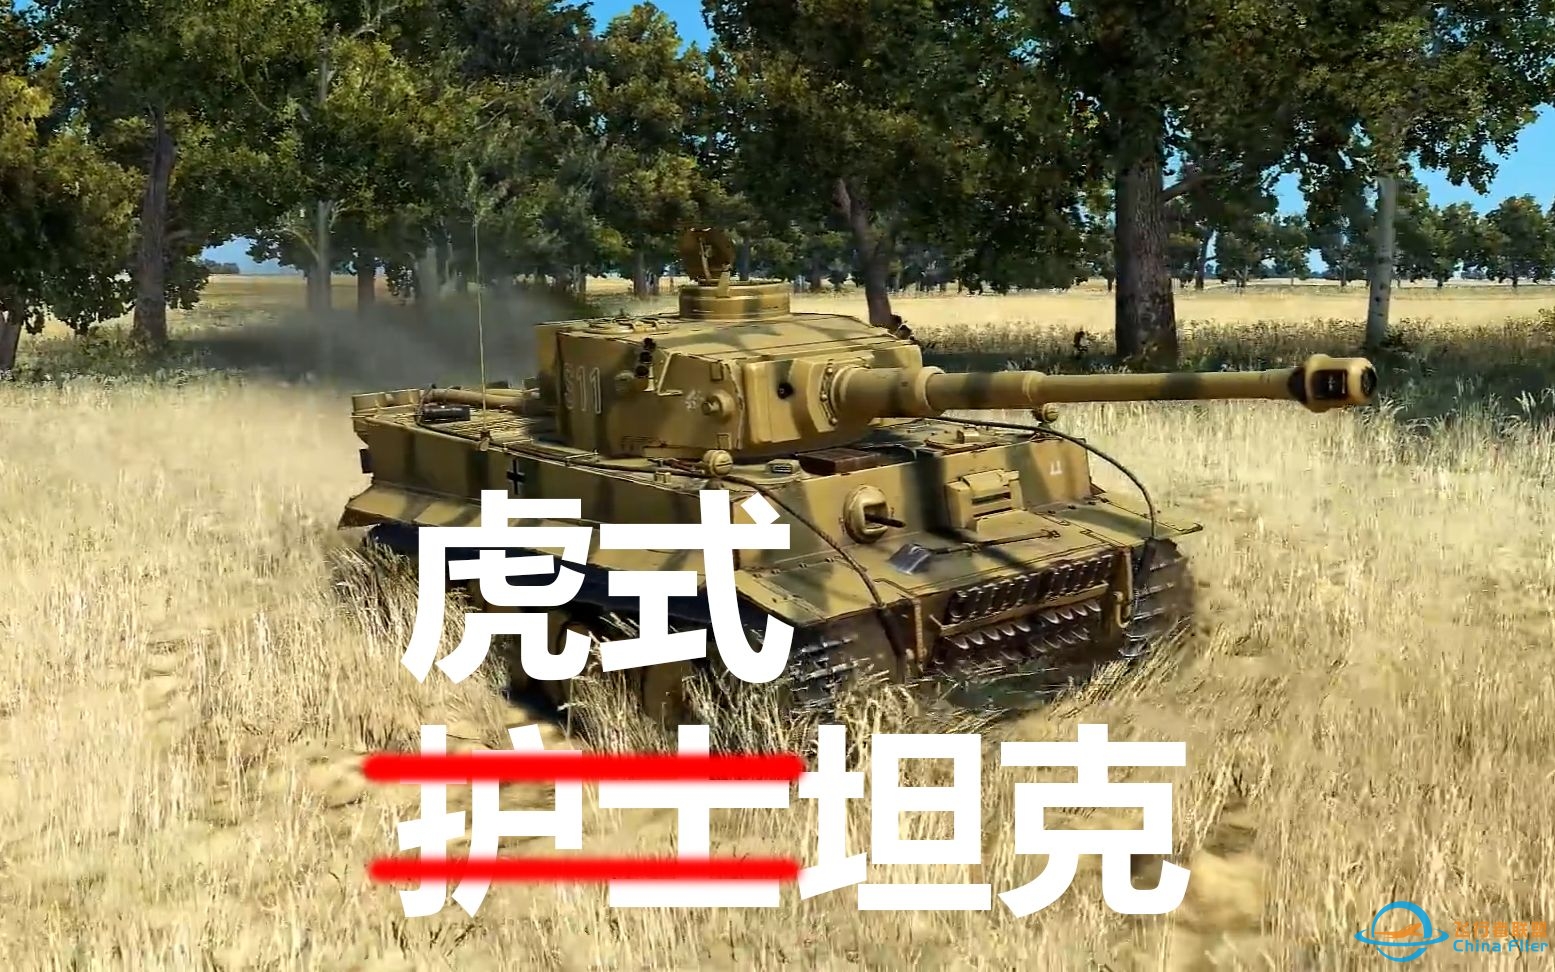 【IL 2】虎式坦克第一人称内部视角及库尔斯克会战(斩T34如割草)-8552 